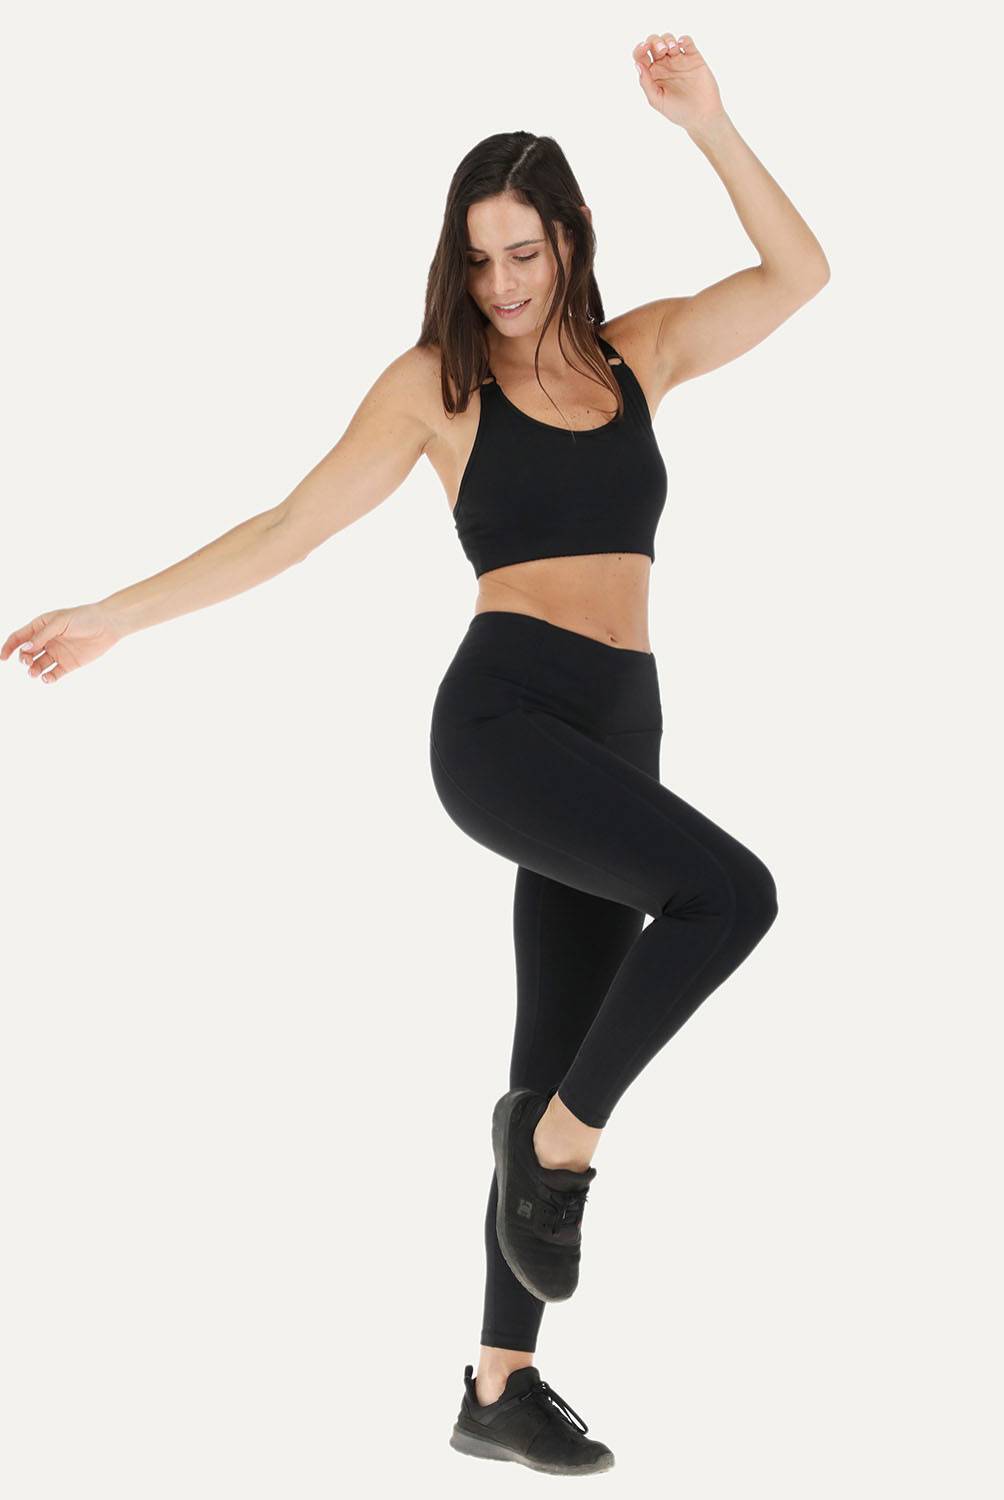 Pantalon Yoga Flores Calzas Leggings Tiro Alto Mujer Deportes